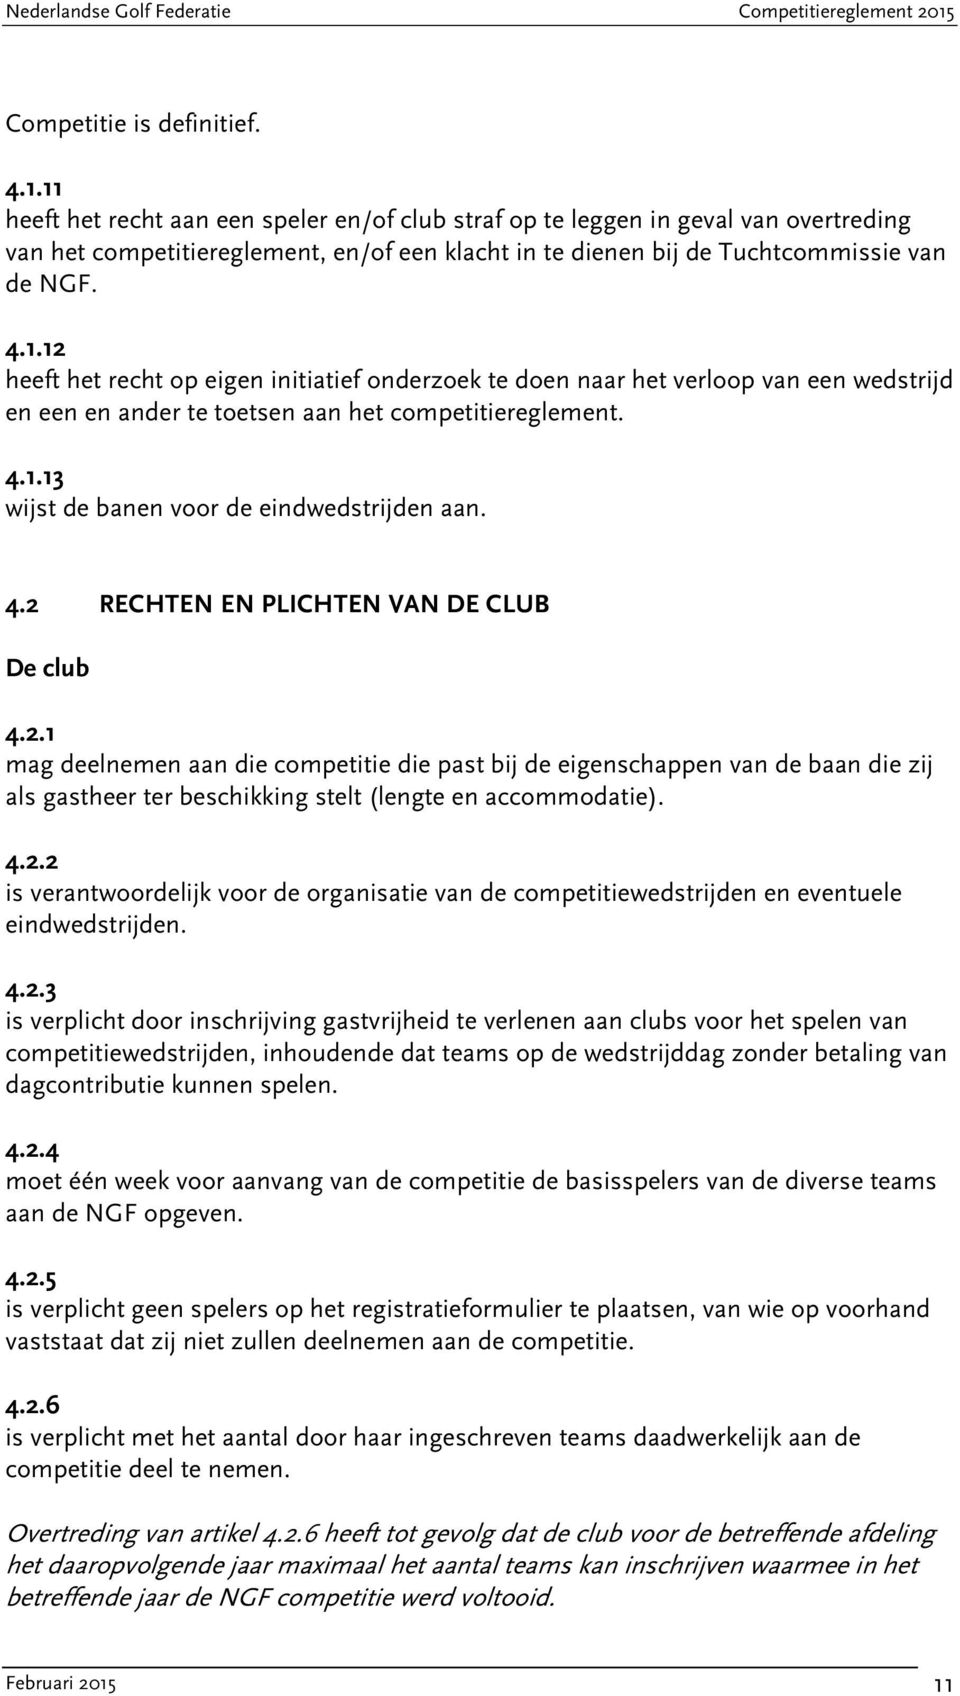 4.1.13 wijst de banen voor de eindwedstrijden aan. 4.2 RECHTEN EN PLICHTEN VAN DE CLUB De club 4.2.1 mag deelnemen aan die competitie die past bij de eigenschappen van de baan die zij als gastheer ter beschikking stelt (lengte en accommodatie).